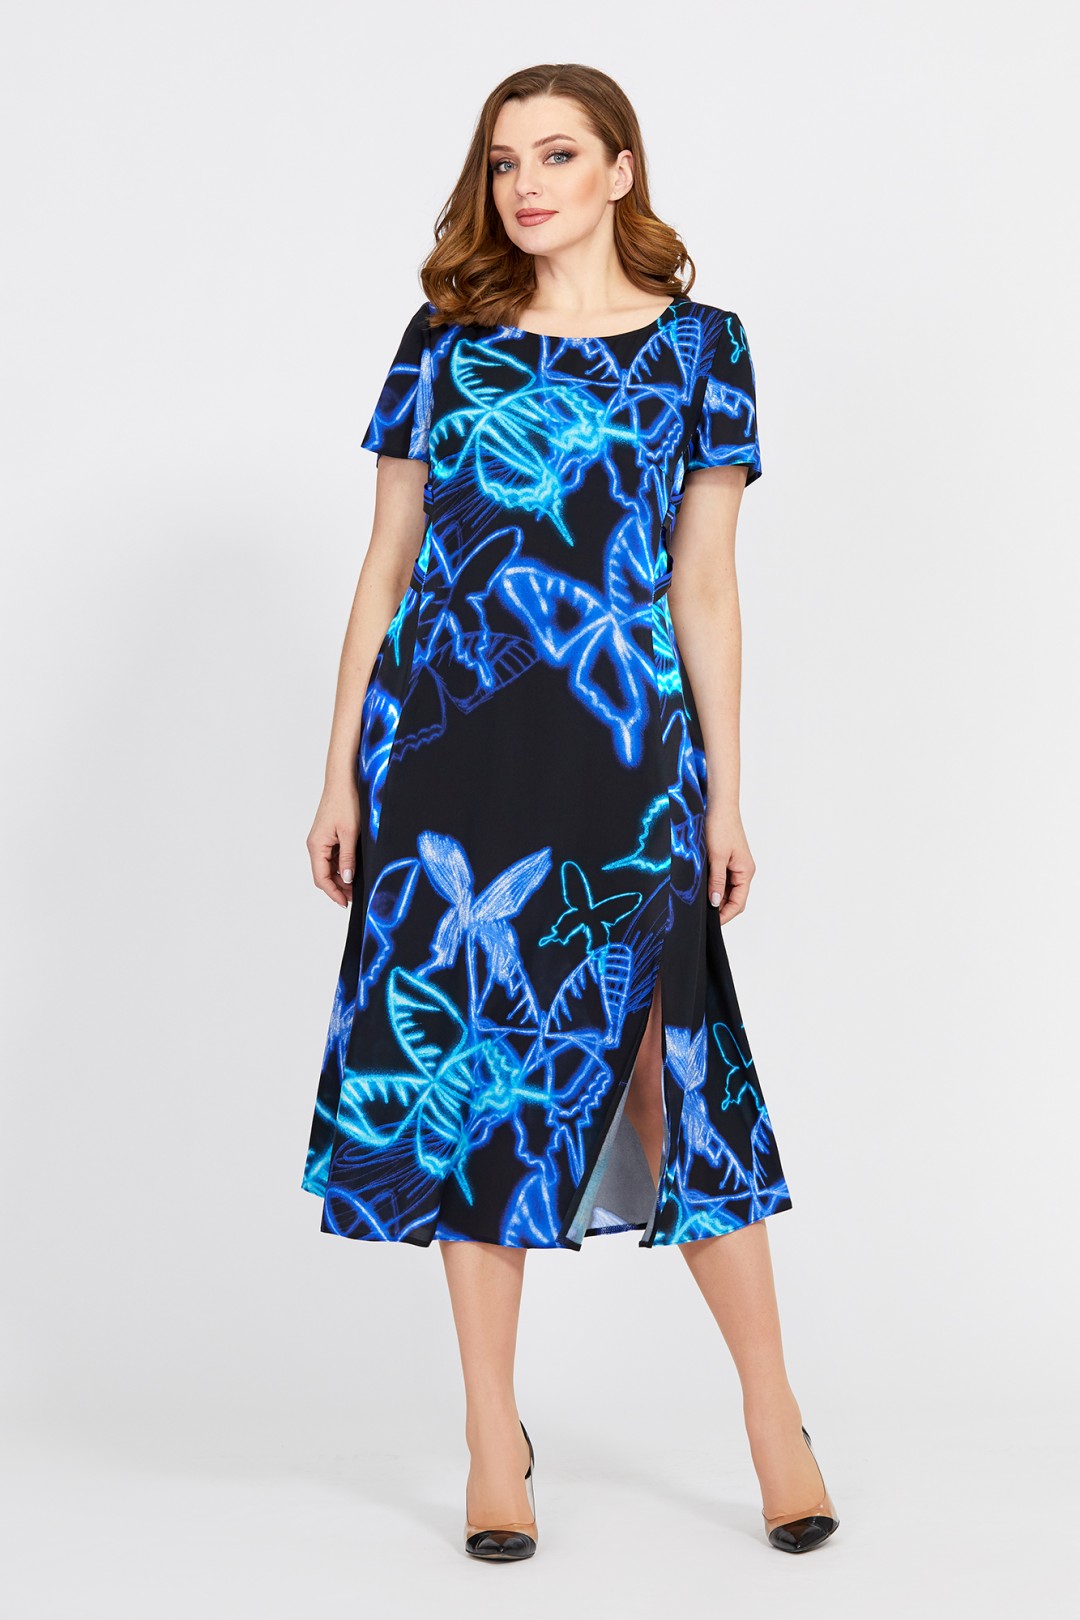 Платье Мублиз 528 черный+синий